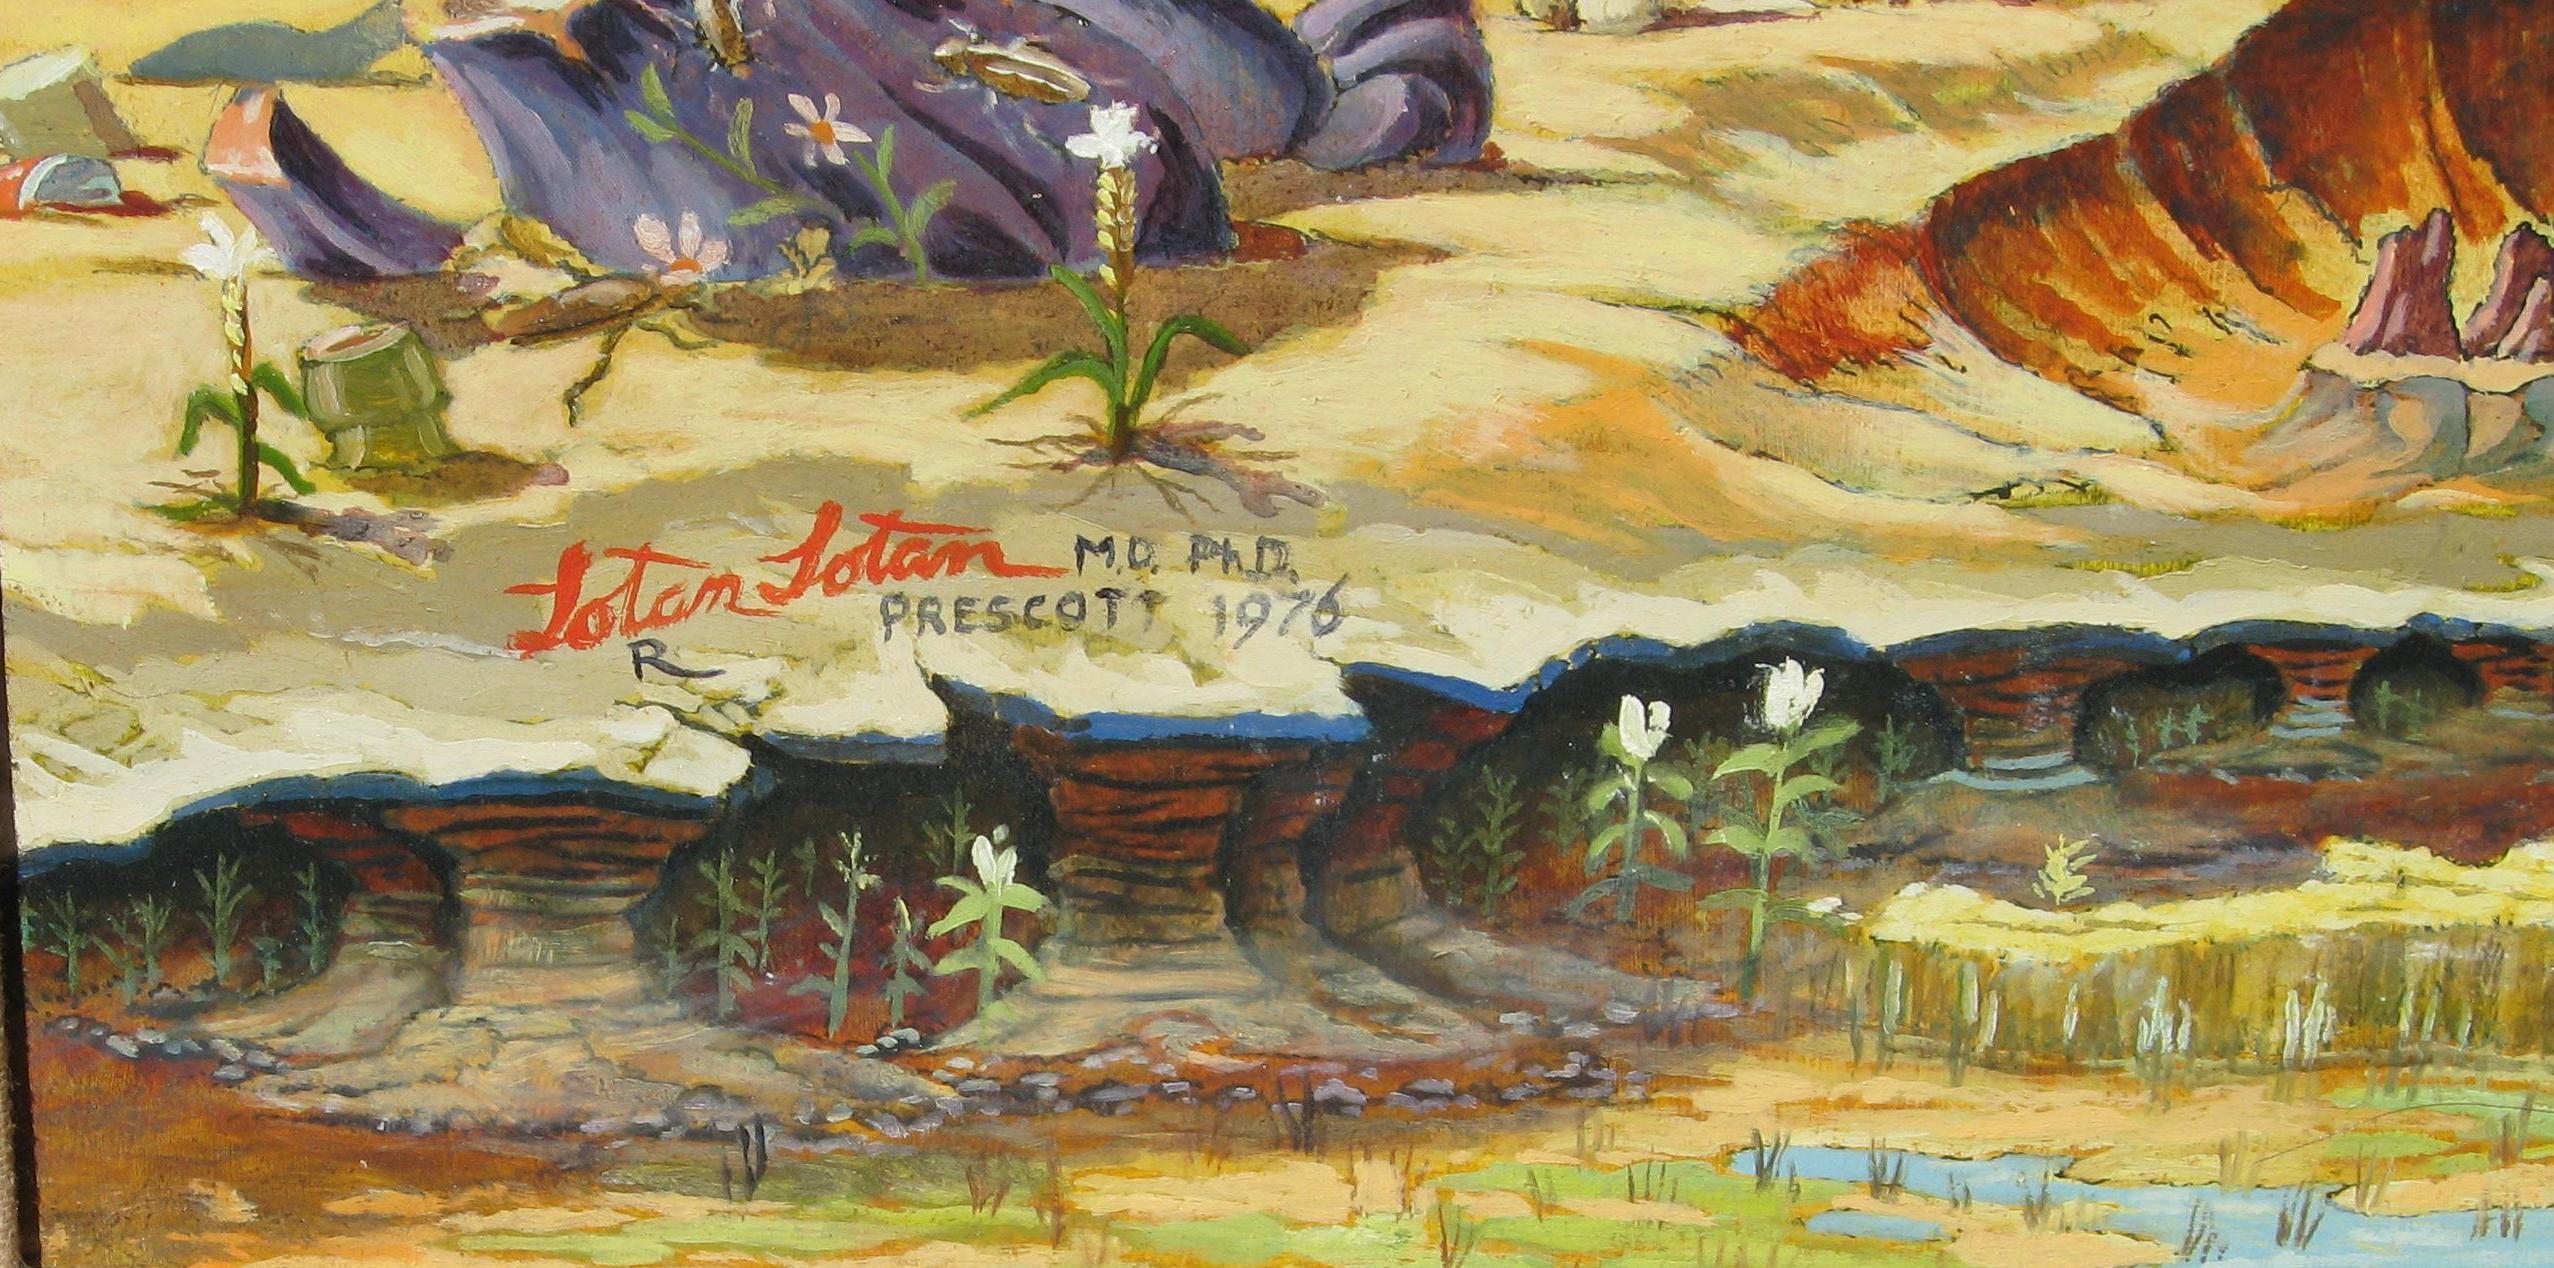 Peinture surréaliste, huile sur panneau de feu l'artiste ariégeois Lotan Lotan. 
Signé en bas à gauche par l'artiste et daté 1976. 
La peinture mesure 30